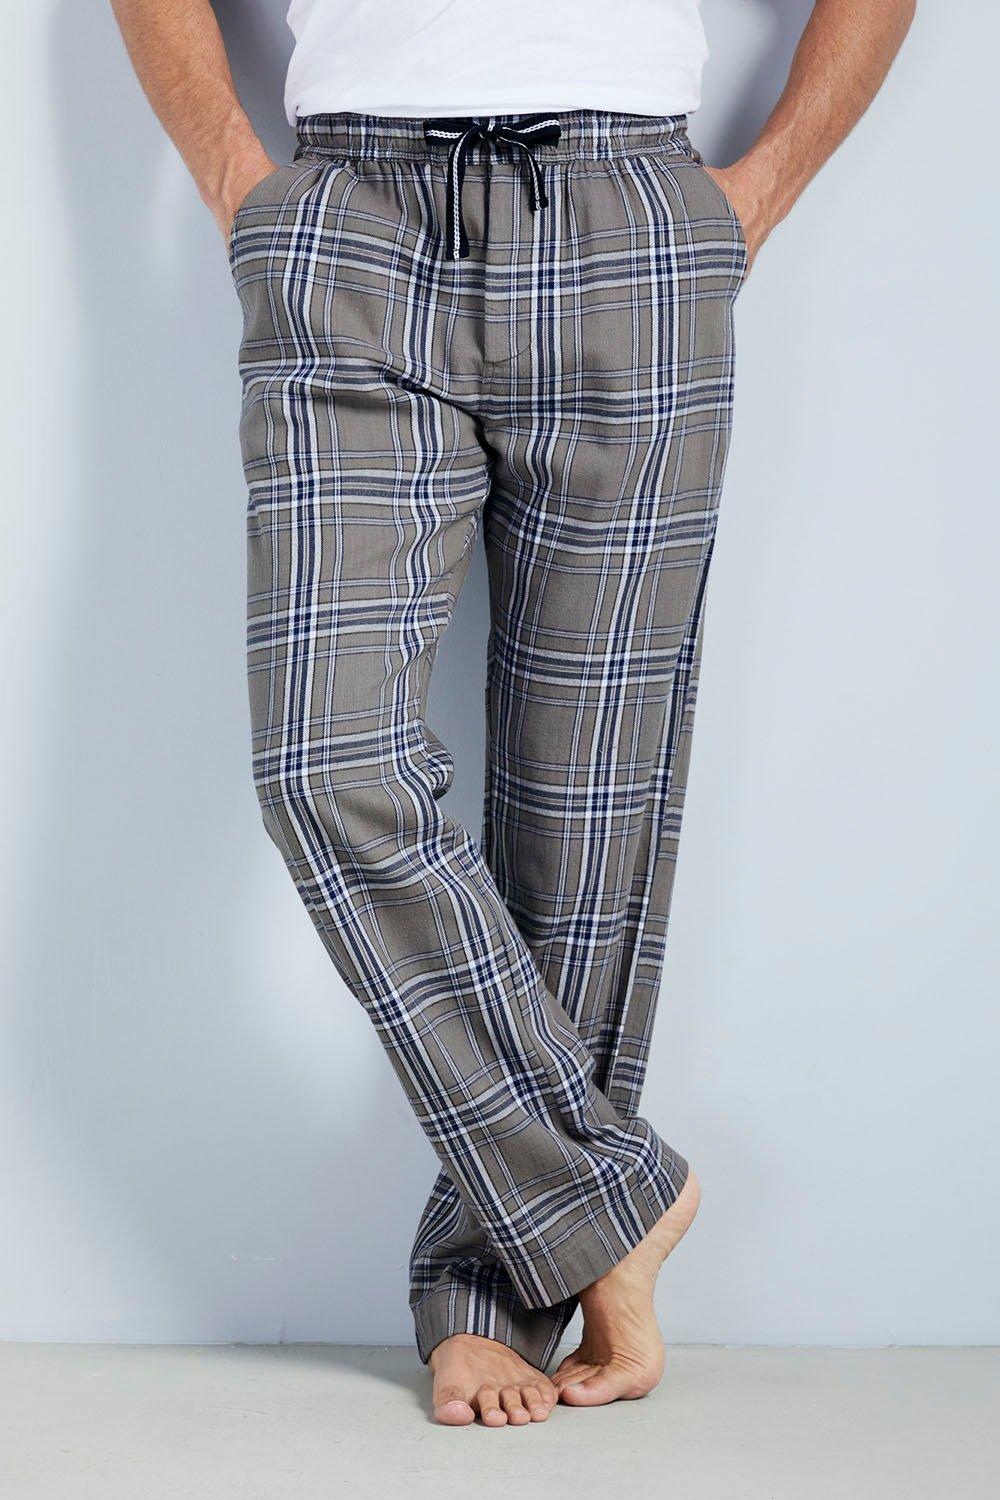 Loungewear Trousers 31" (79cm) inside leg